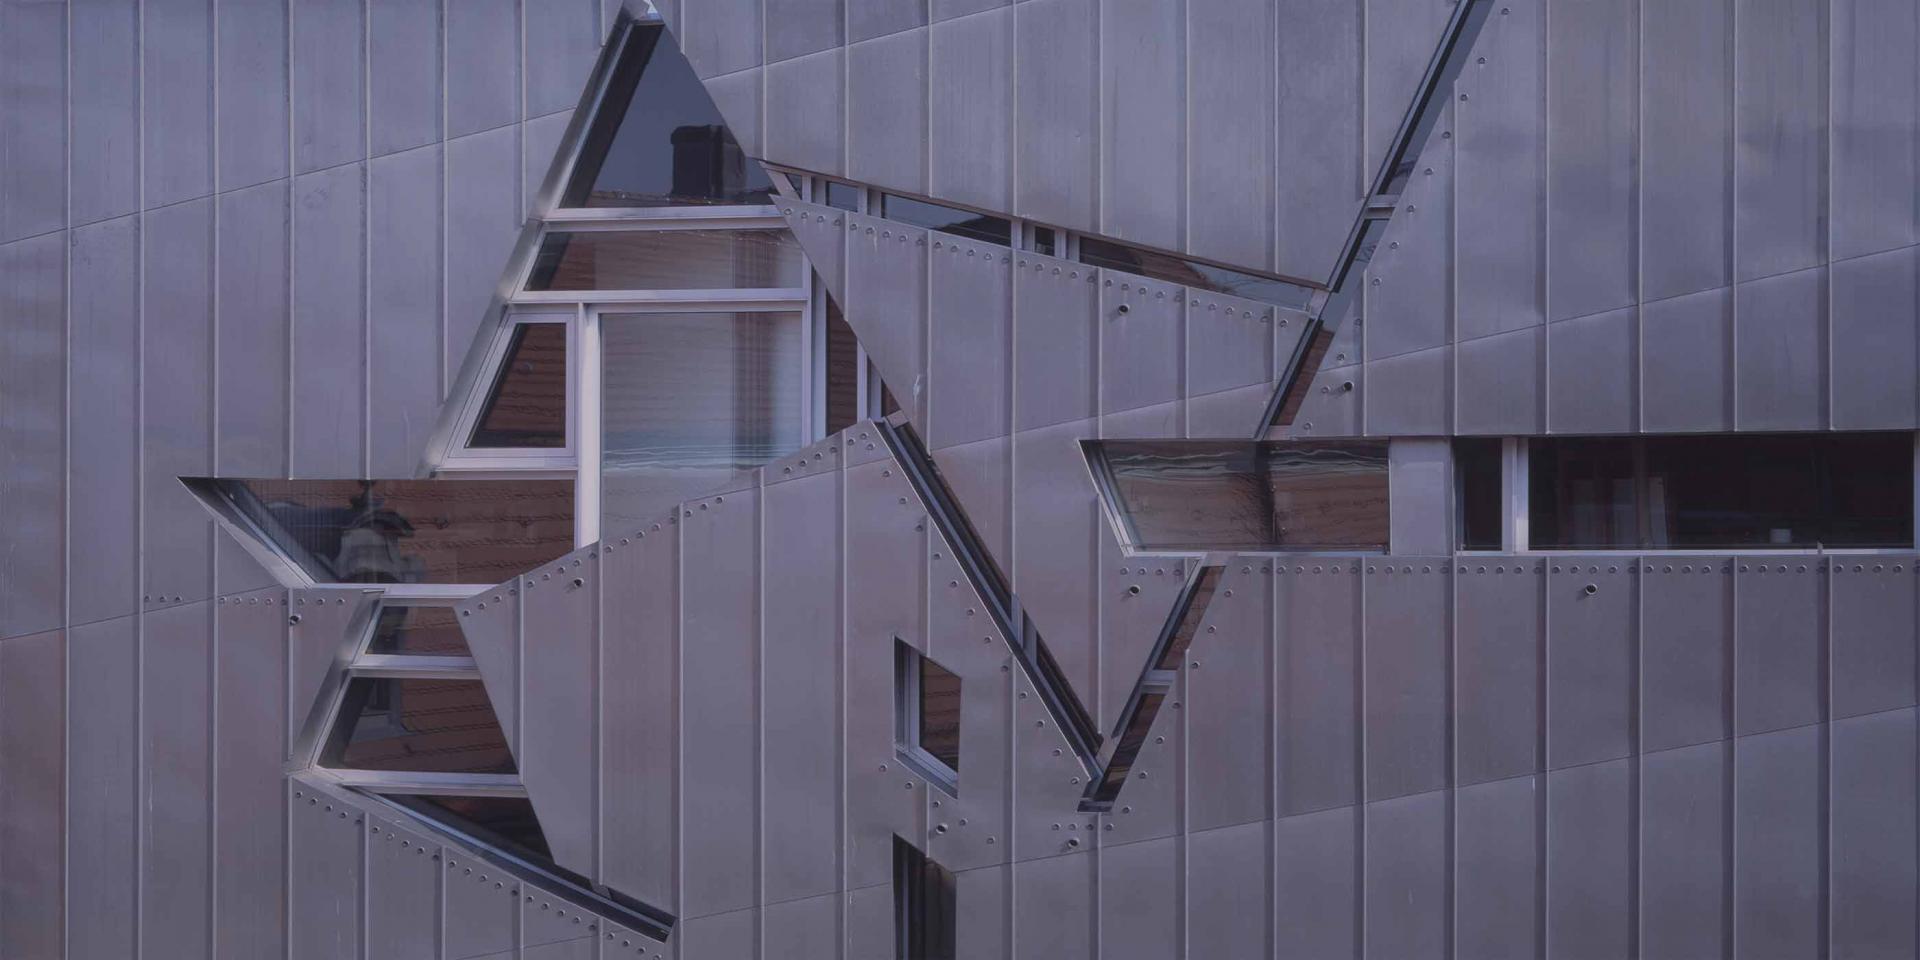 Detailansicht der Zinkfassade des Libeskind-Baus mit Fenstern